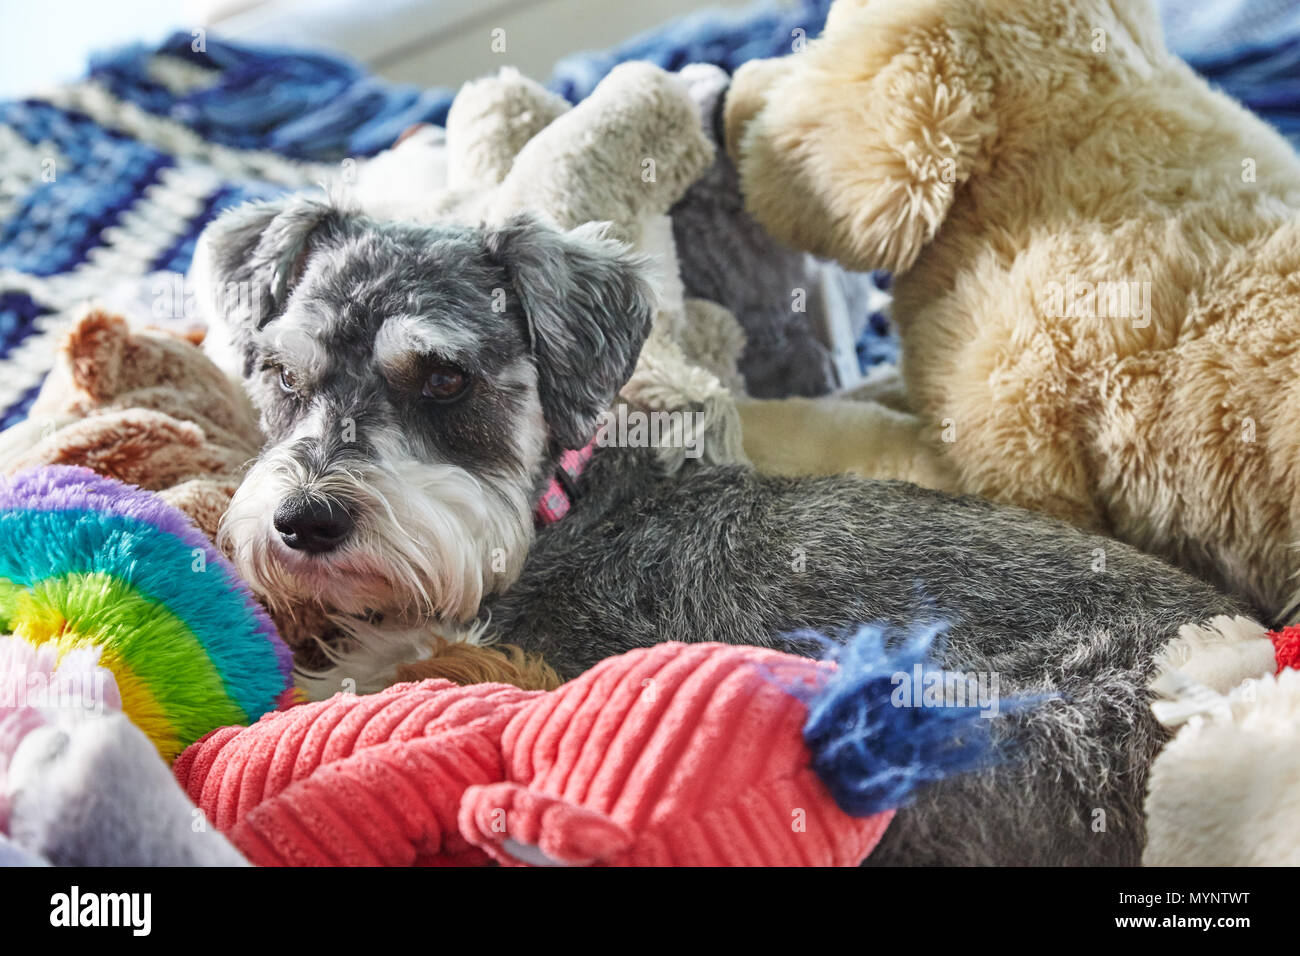 La posa del cane sul letto con animali imbalsamati Foto Stock